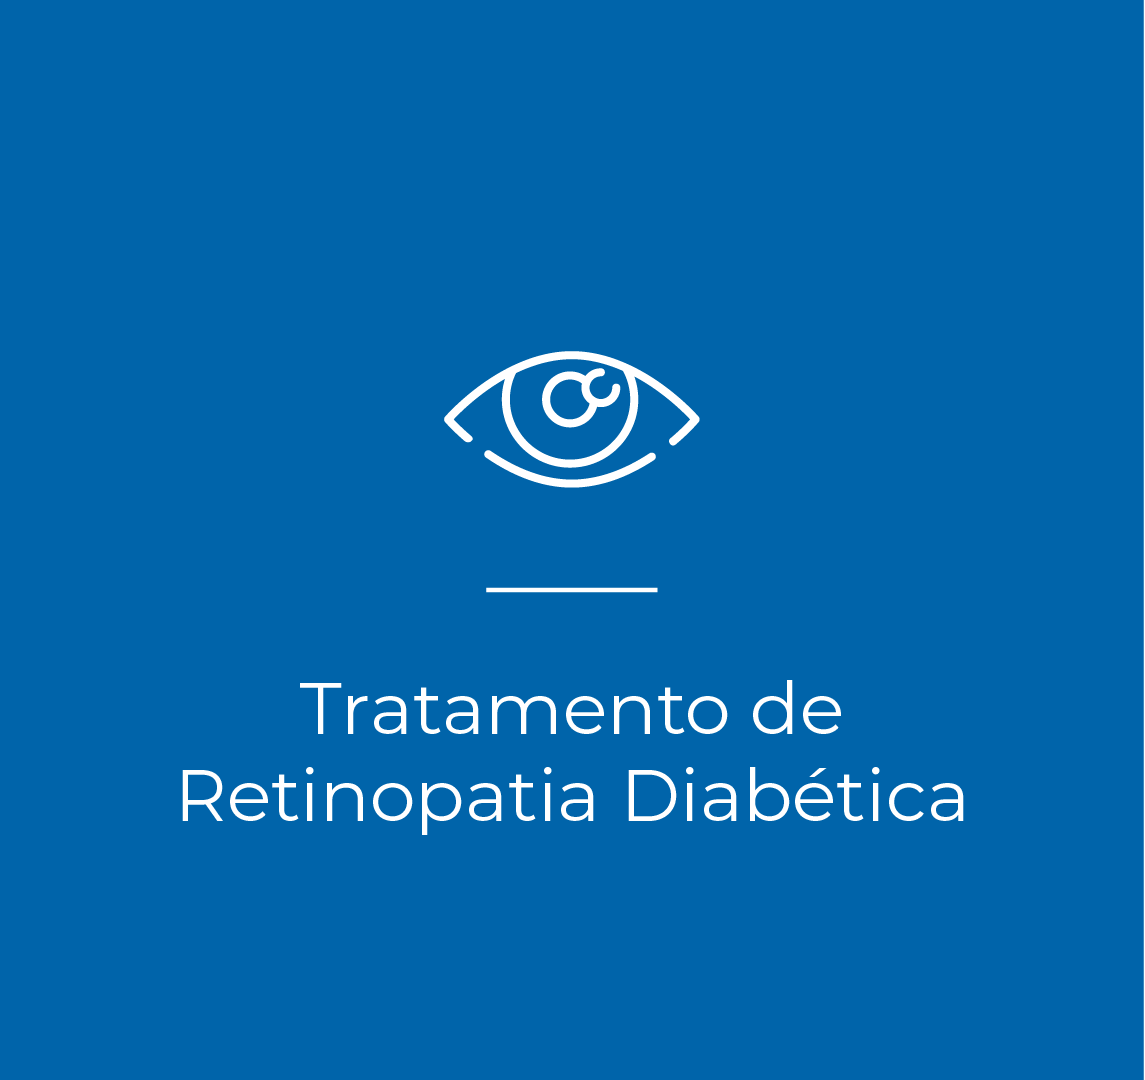 Tratamento da retinopatia diabetica